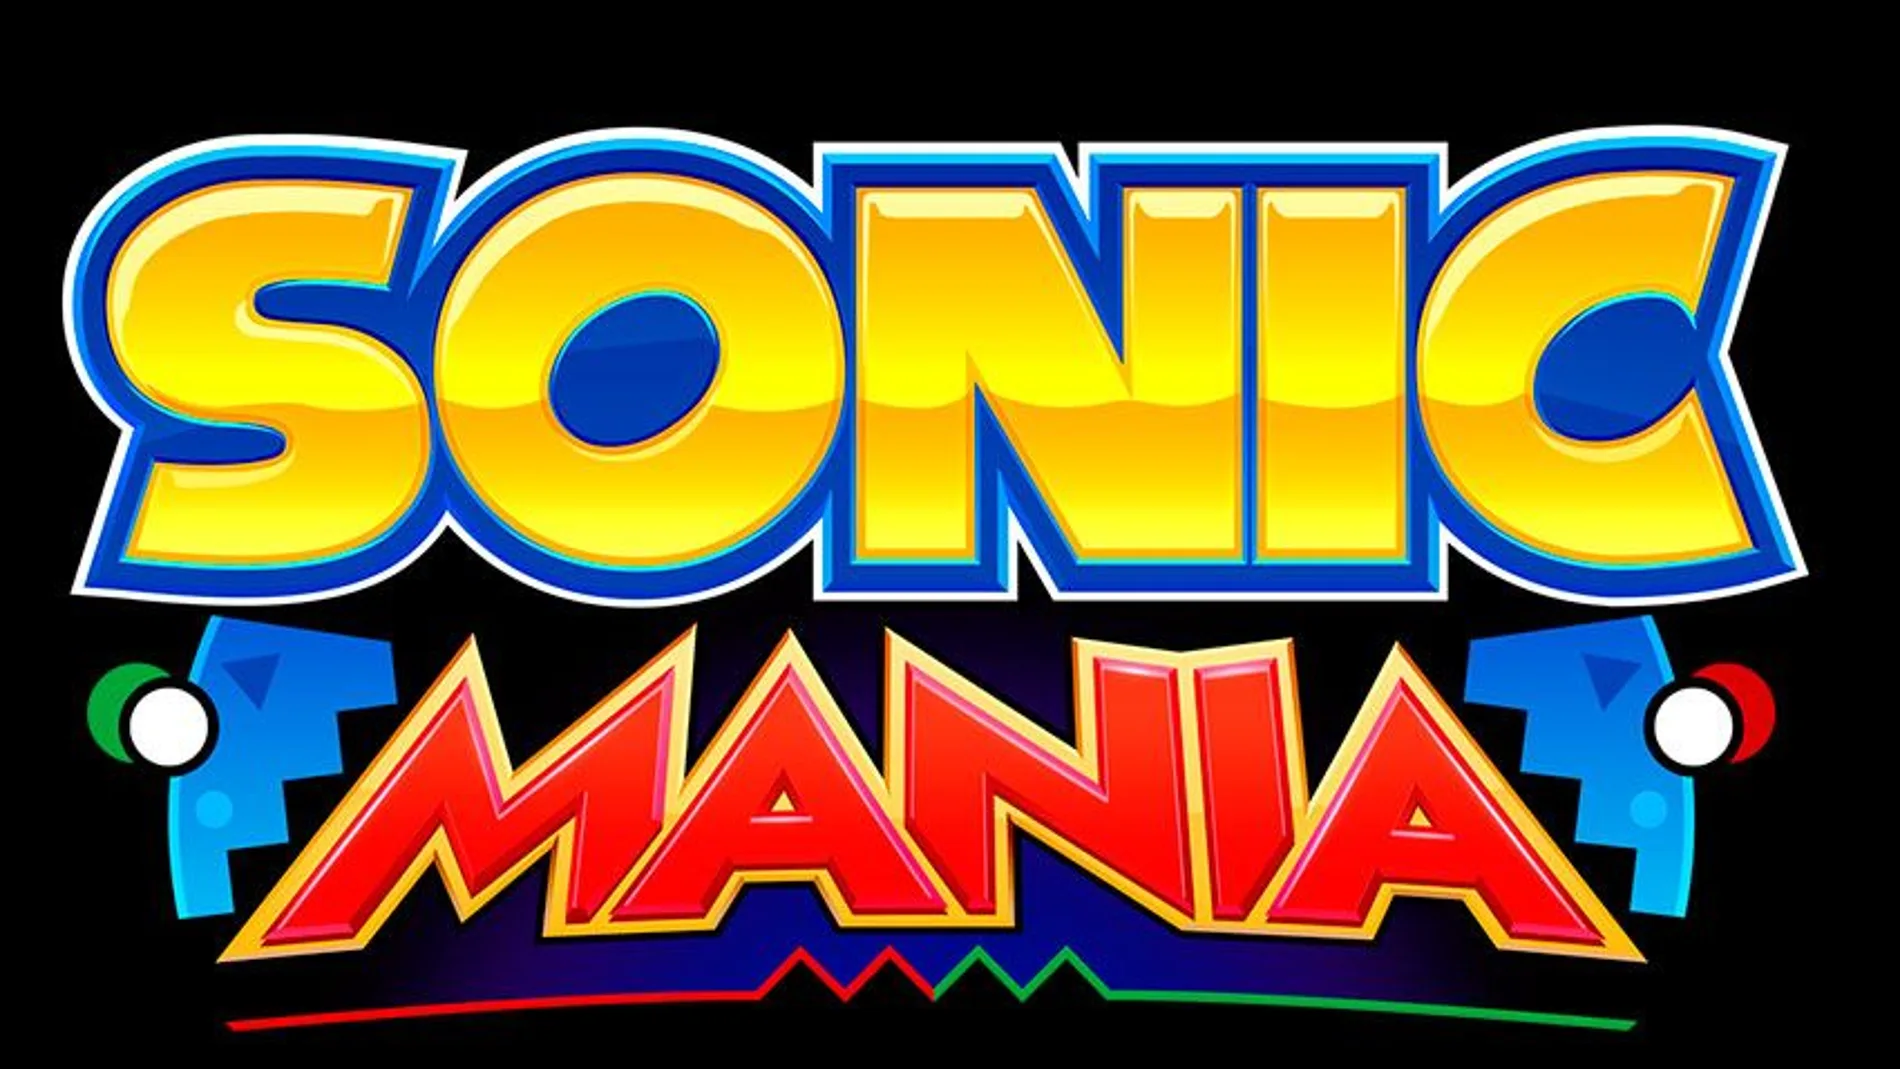 La edición coleccionista de Sonic Mania confirma lanzamiento en Europa